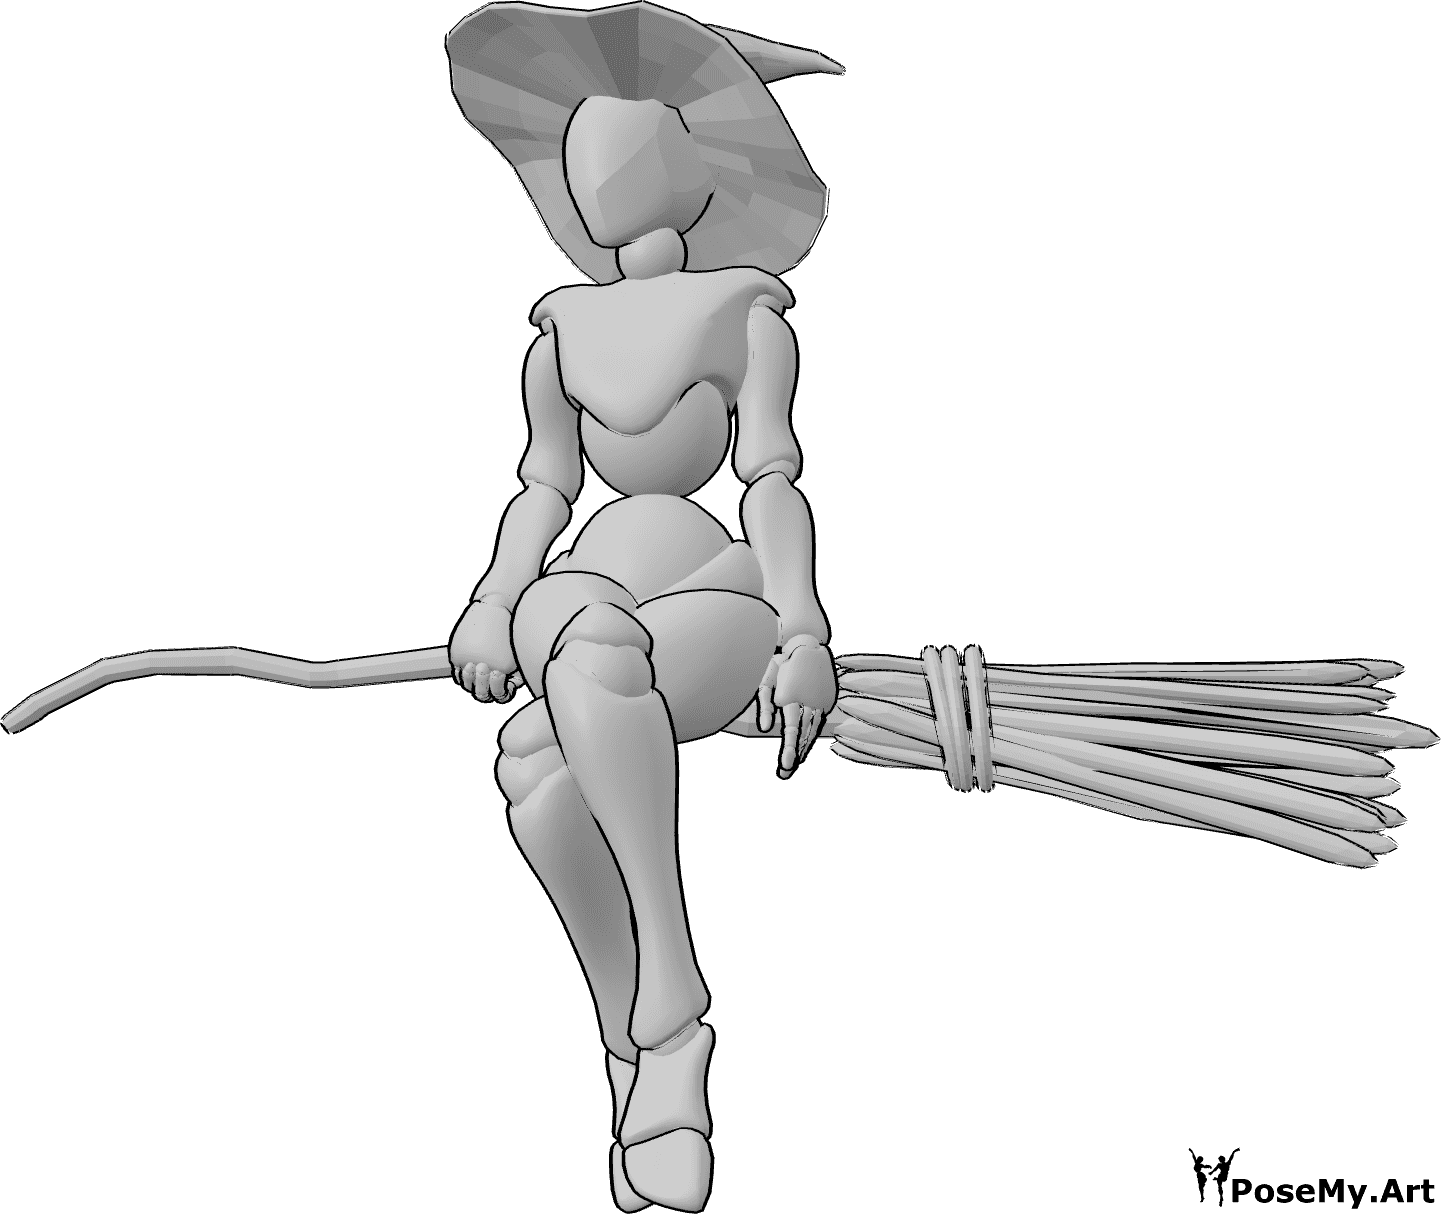 Riferimento alle pose- Posa fluttuante della scopa della strega - Strega donna seduta sulla scopa con le gambe incrociate, con un cappello da strega e lo sguardo rivolto in avanti